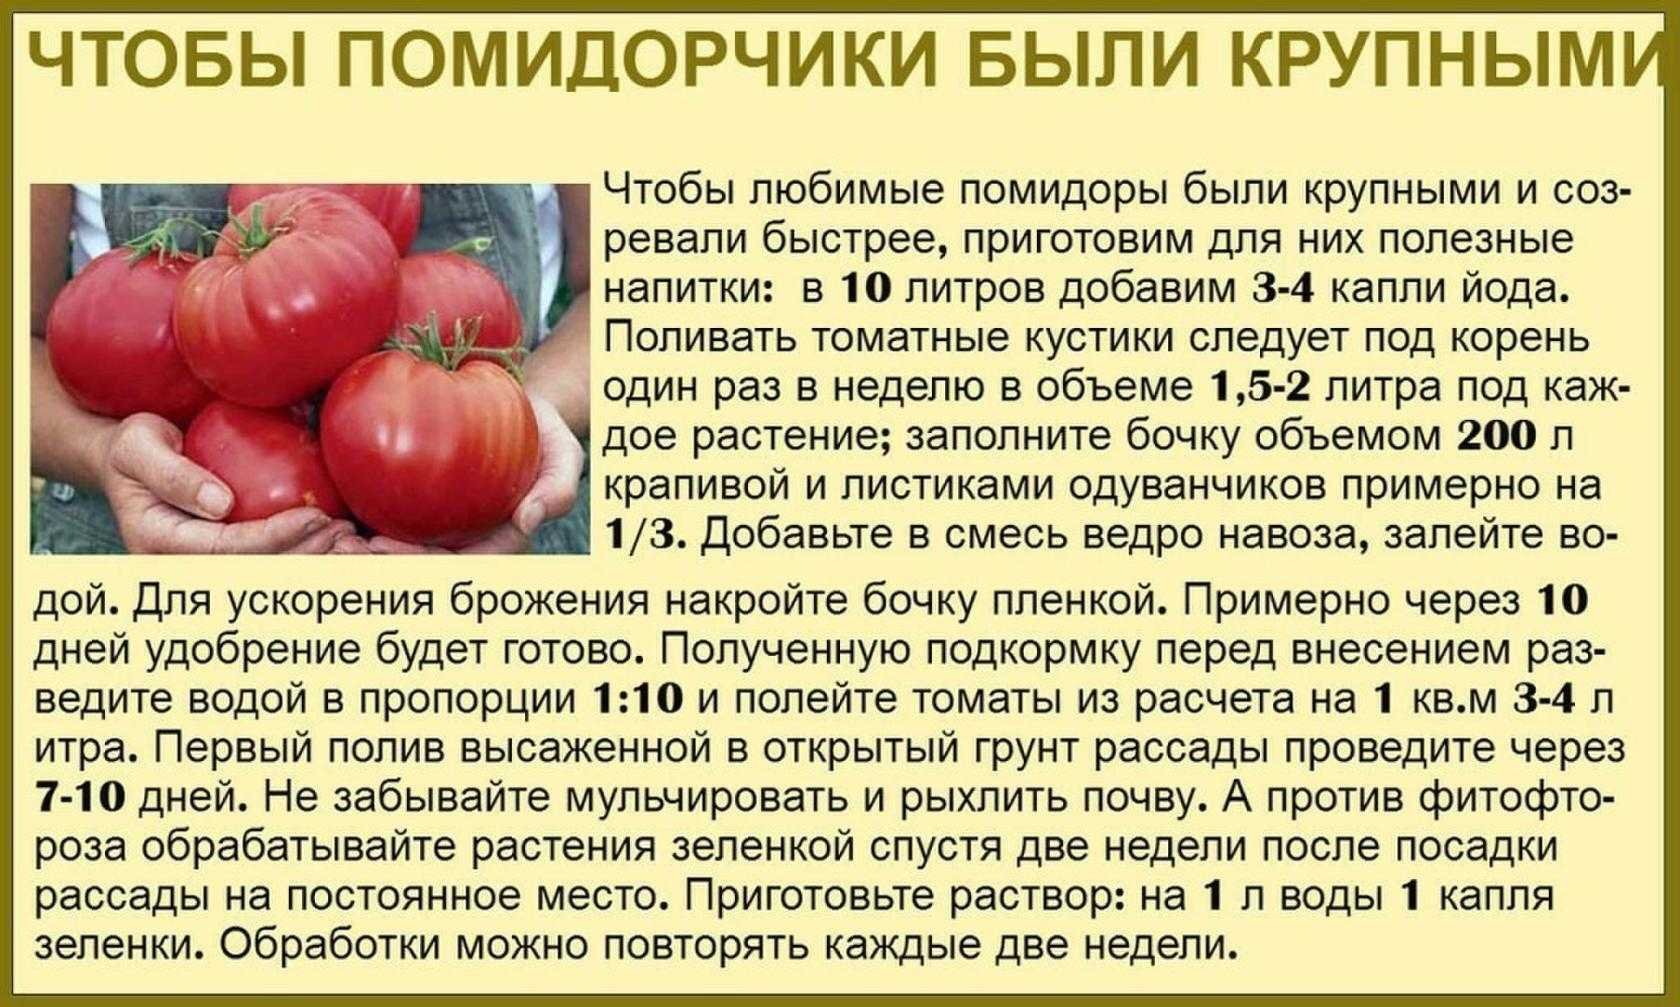 Сколько входят помидоры. Таблица подкормки томатов. Советы садоводам и огородникам. Советы про томаты. Сад огород полезные советы томаты.